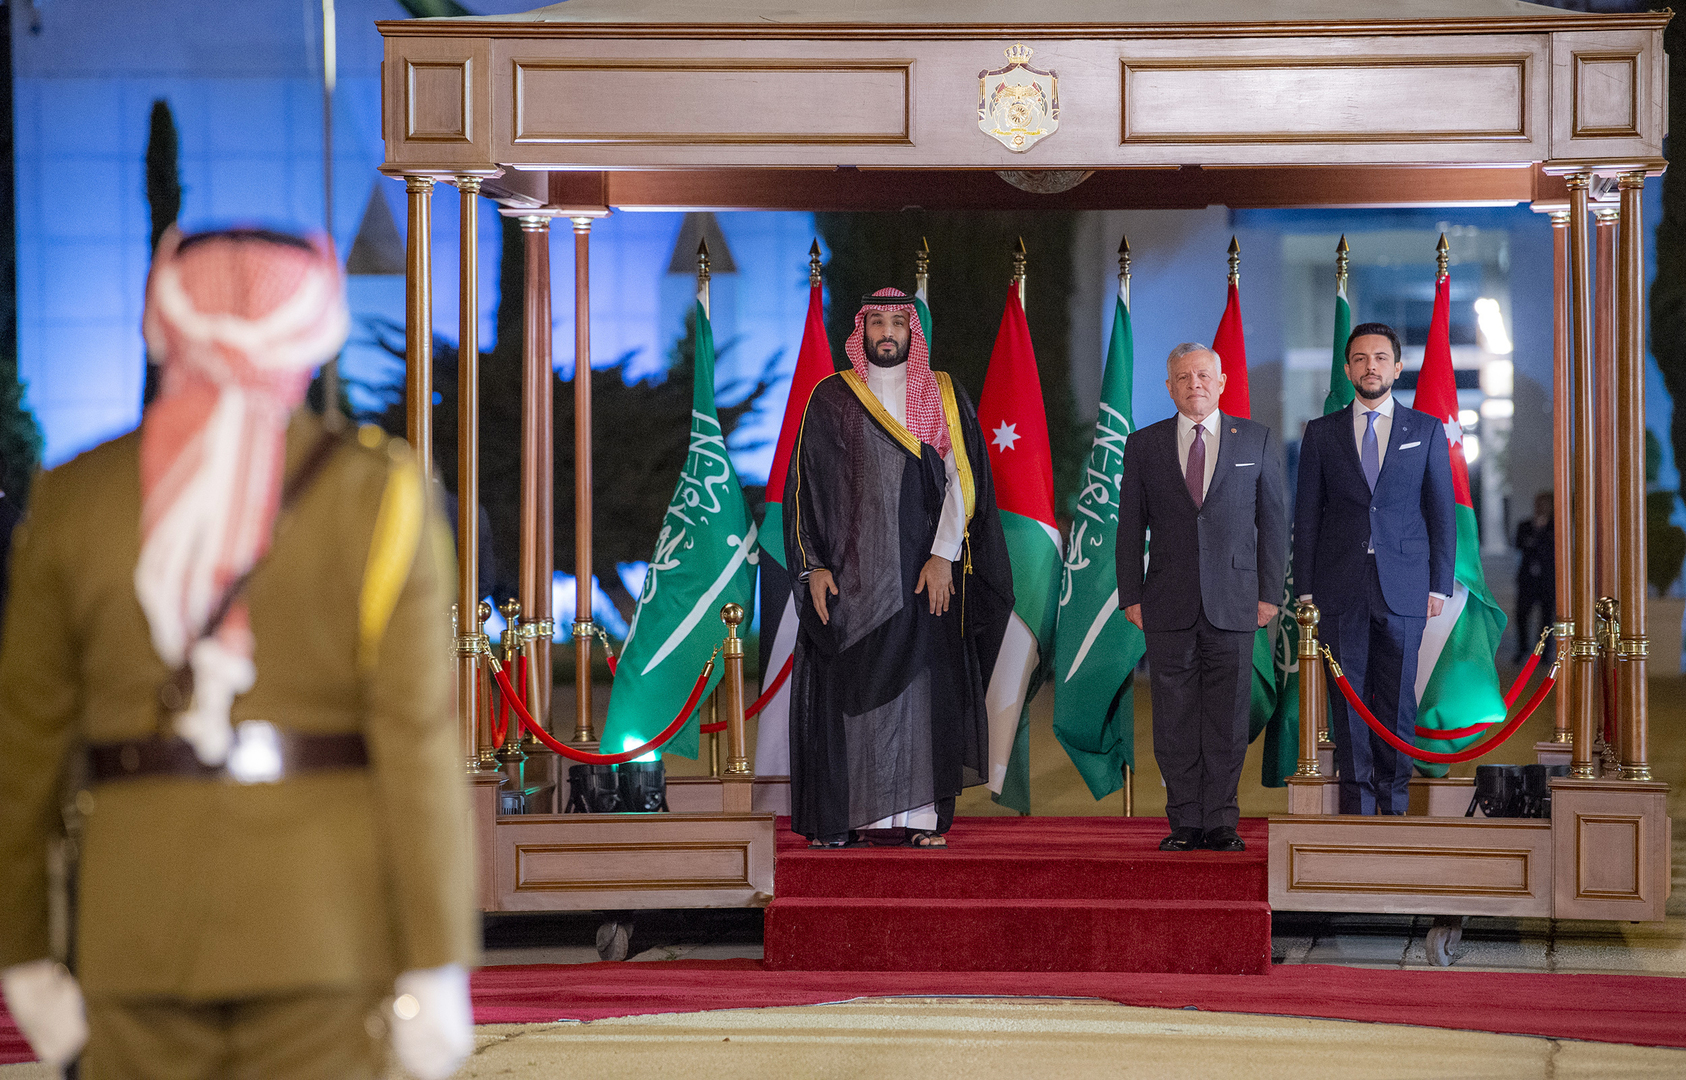 ما هي قصة الوسام الذي منحه الملك عبد الله الثاني للأمير محمد بن سلمان؟ (فيديو + صور)